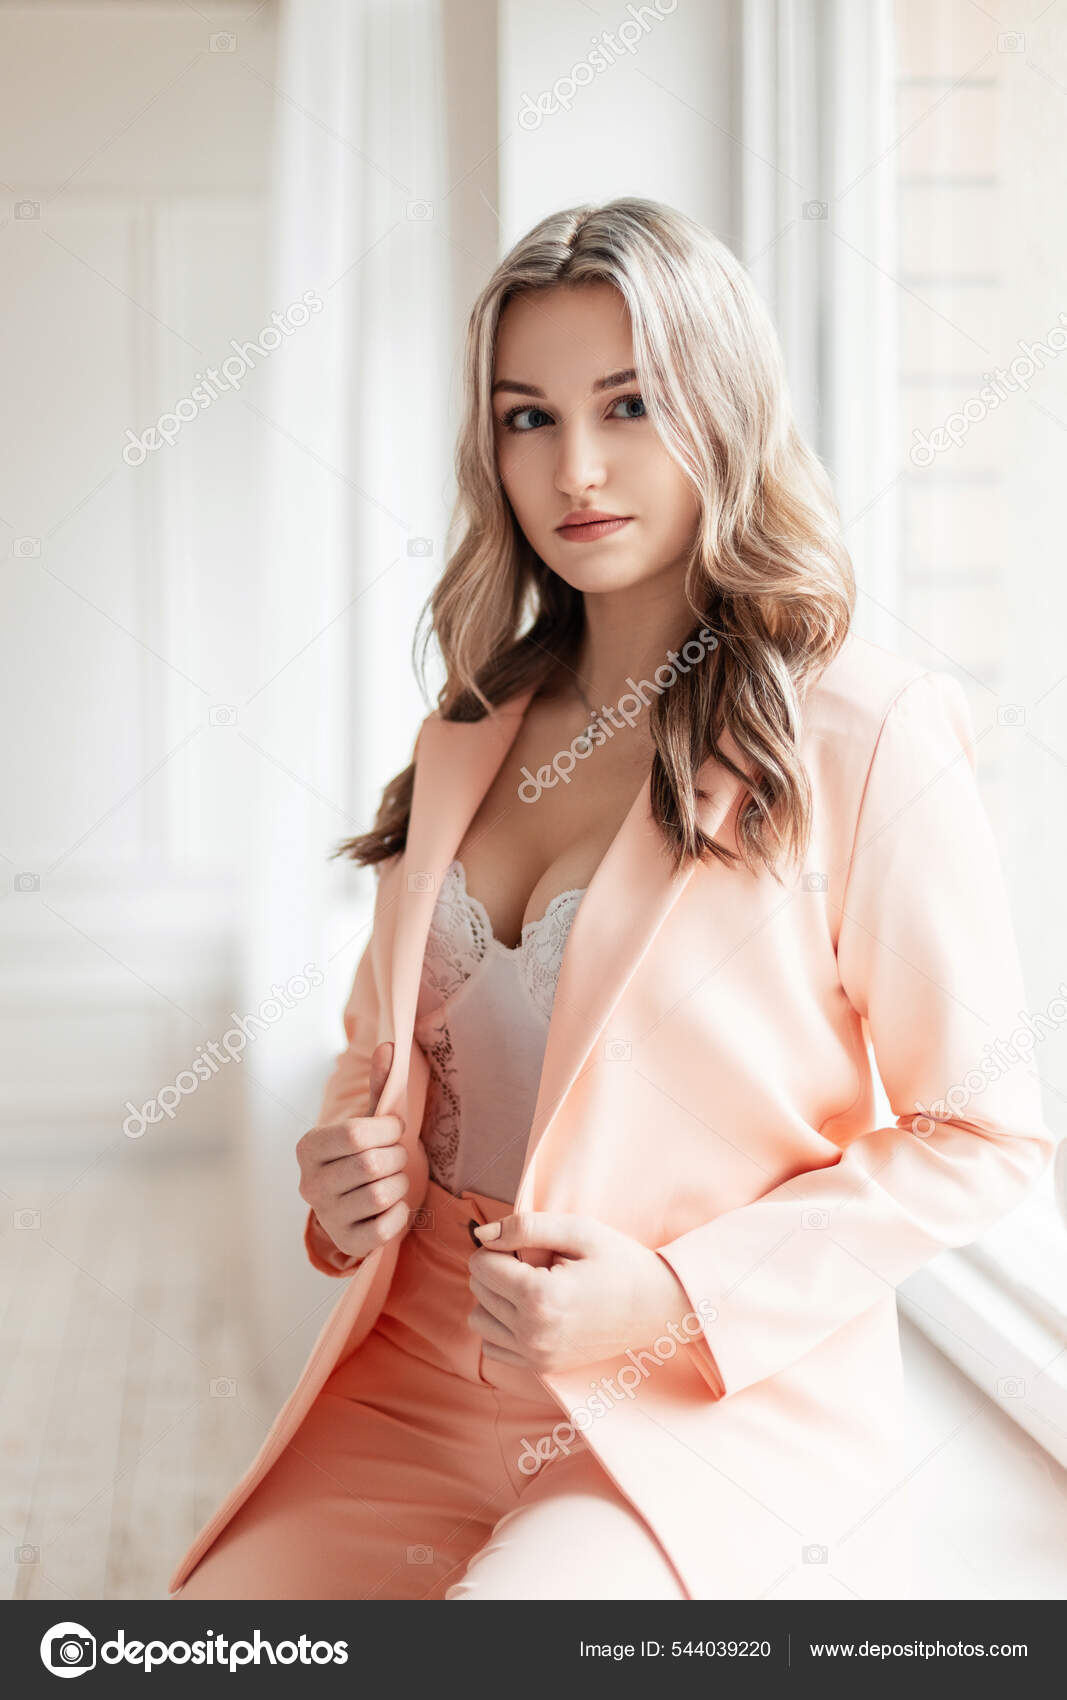 https://st.depositphotos.com/3323581/54403/i/1600/depositphotos_544039220-stock-photo-elegant-beautiful-sexy-young-woman.jpg